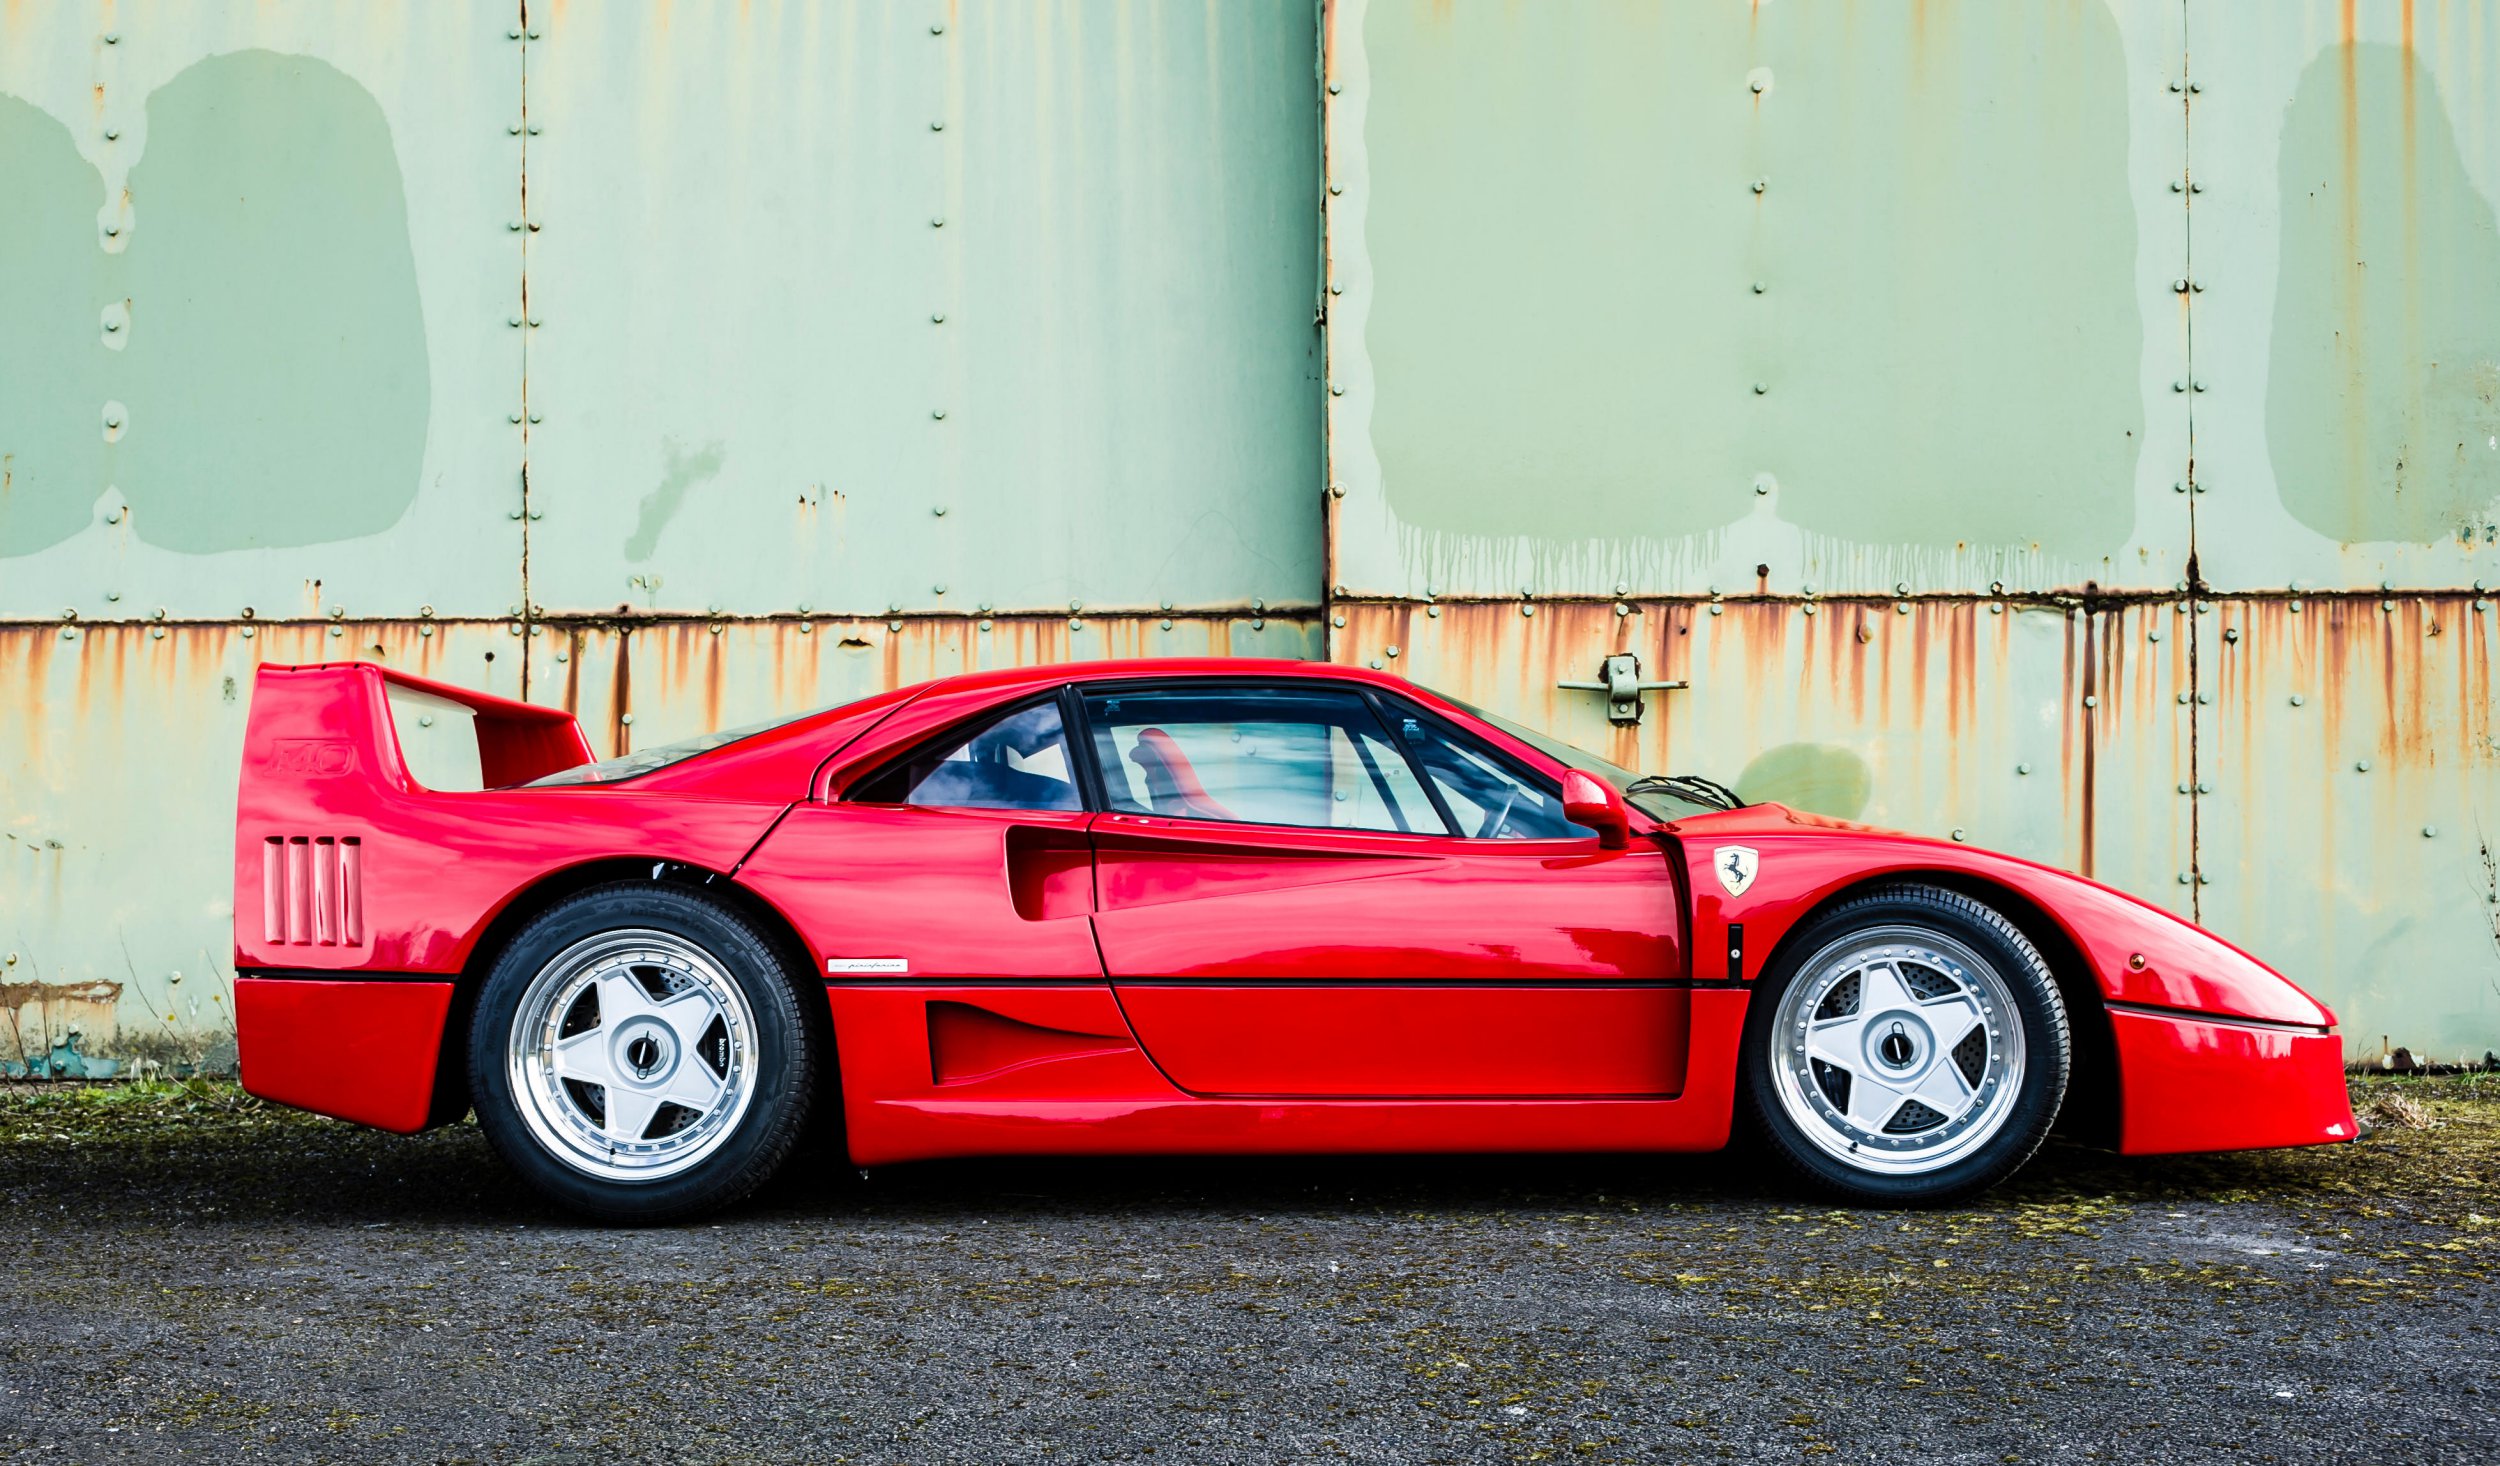 Der Ferrari F40 wurde erstmals in den 80er Jahren gebaut